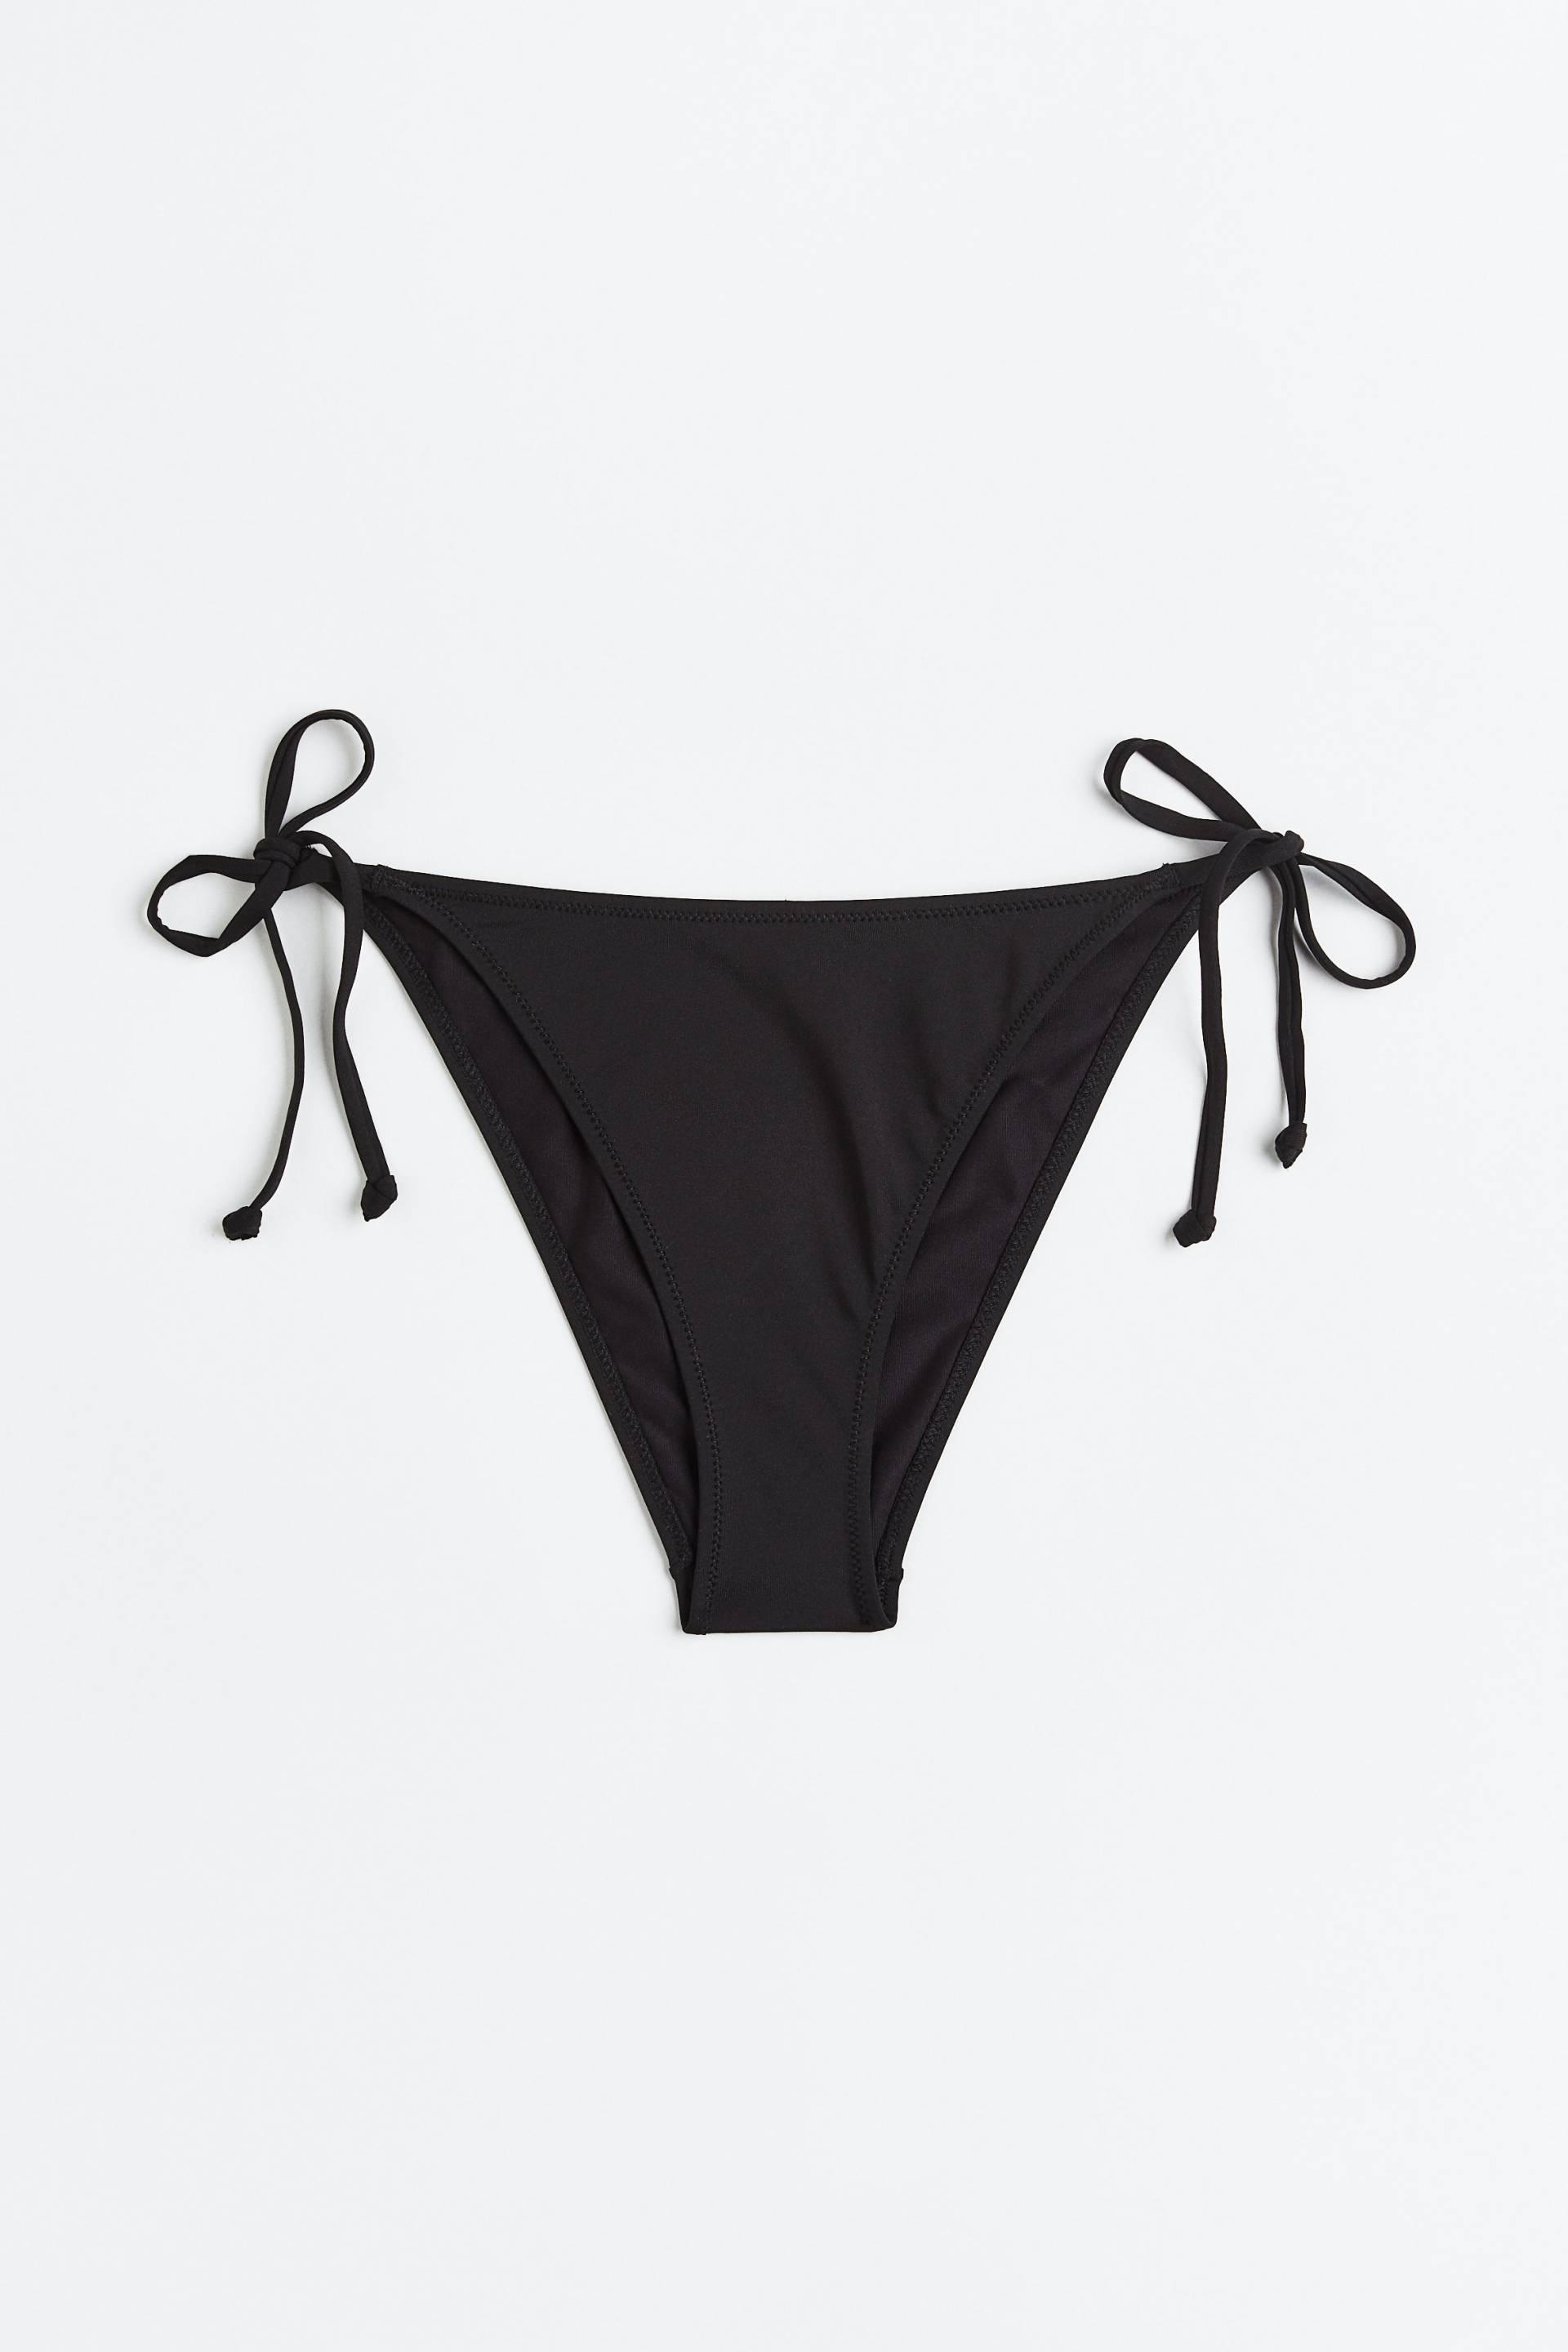 H&M Tie-Tanga Bikinihose Schwarz, Bikini-Unterteil in Größe 40. Farbe: Black von H&M